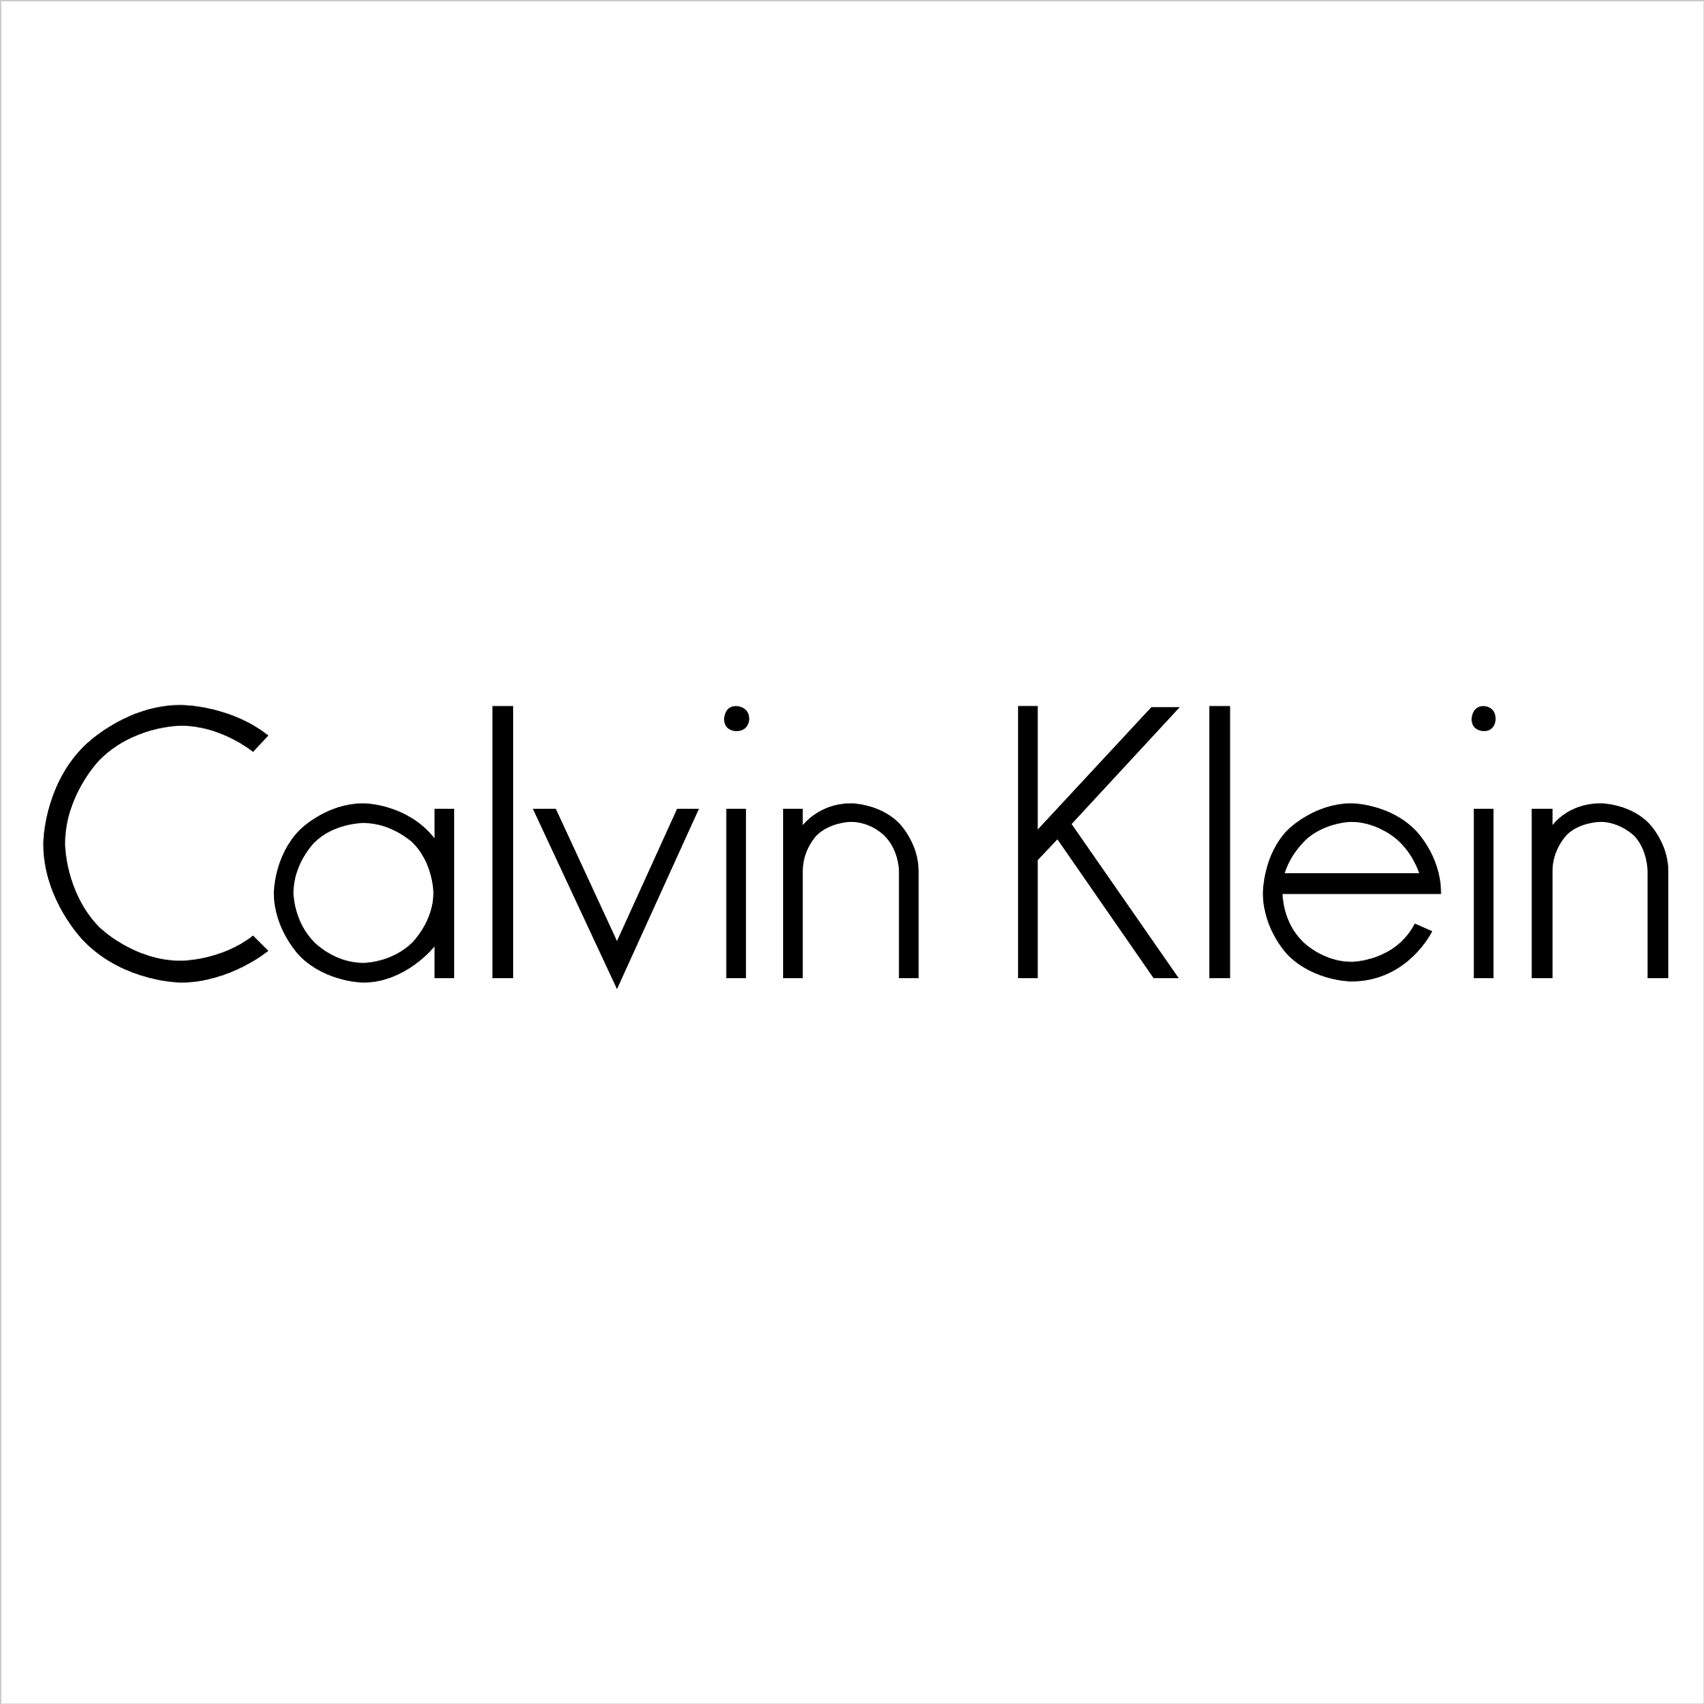 25% Off Underwear @ Calvin Klein